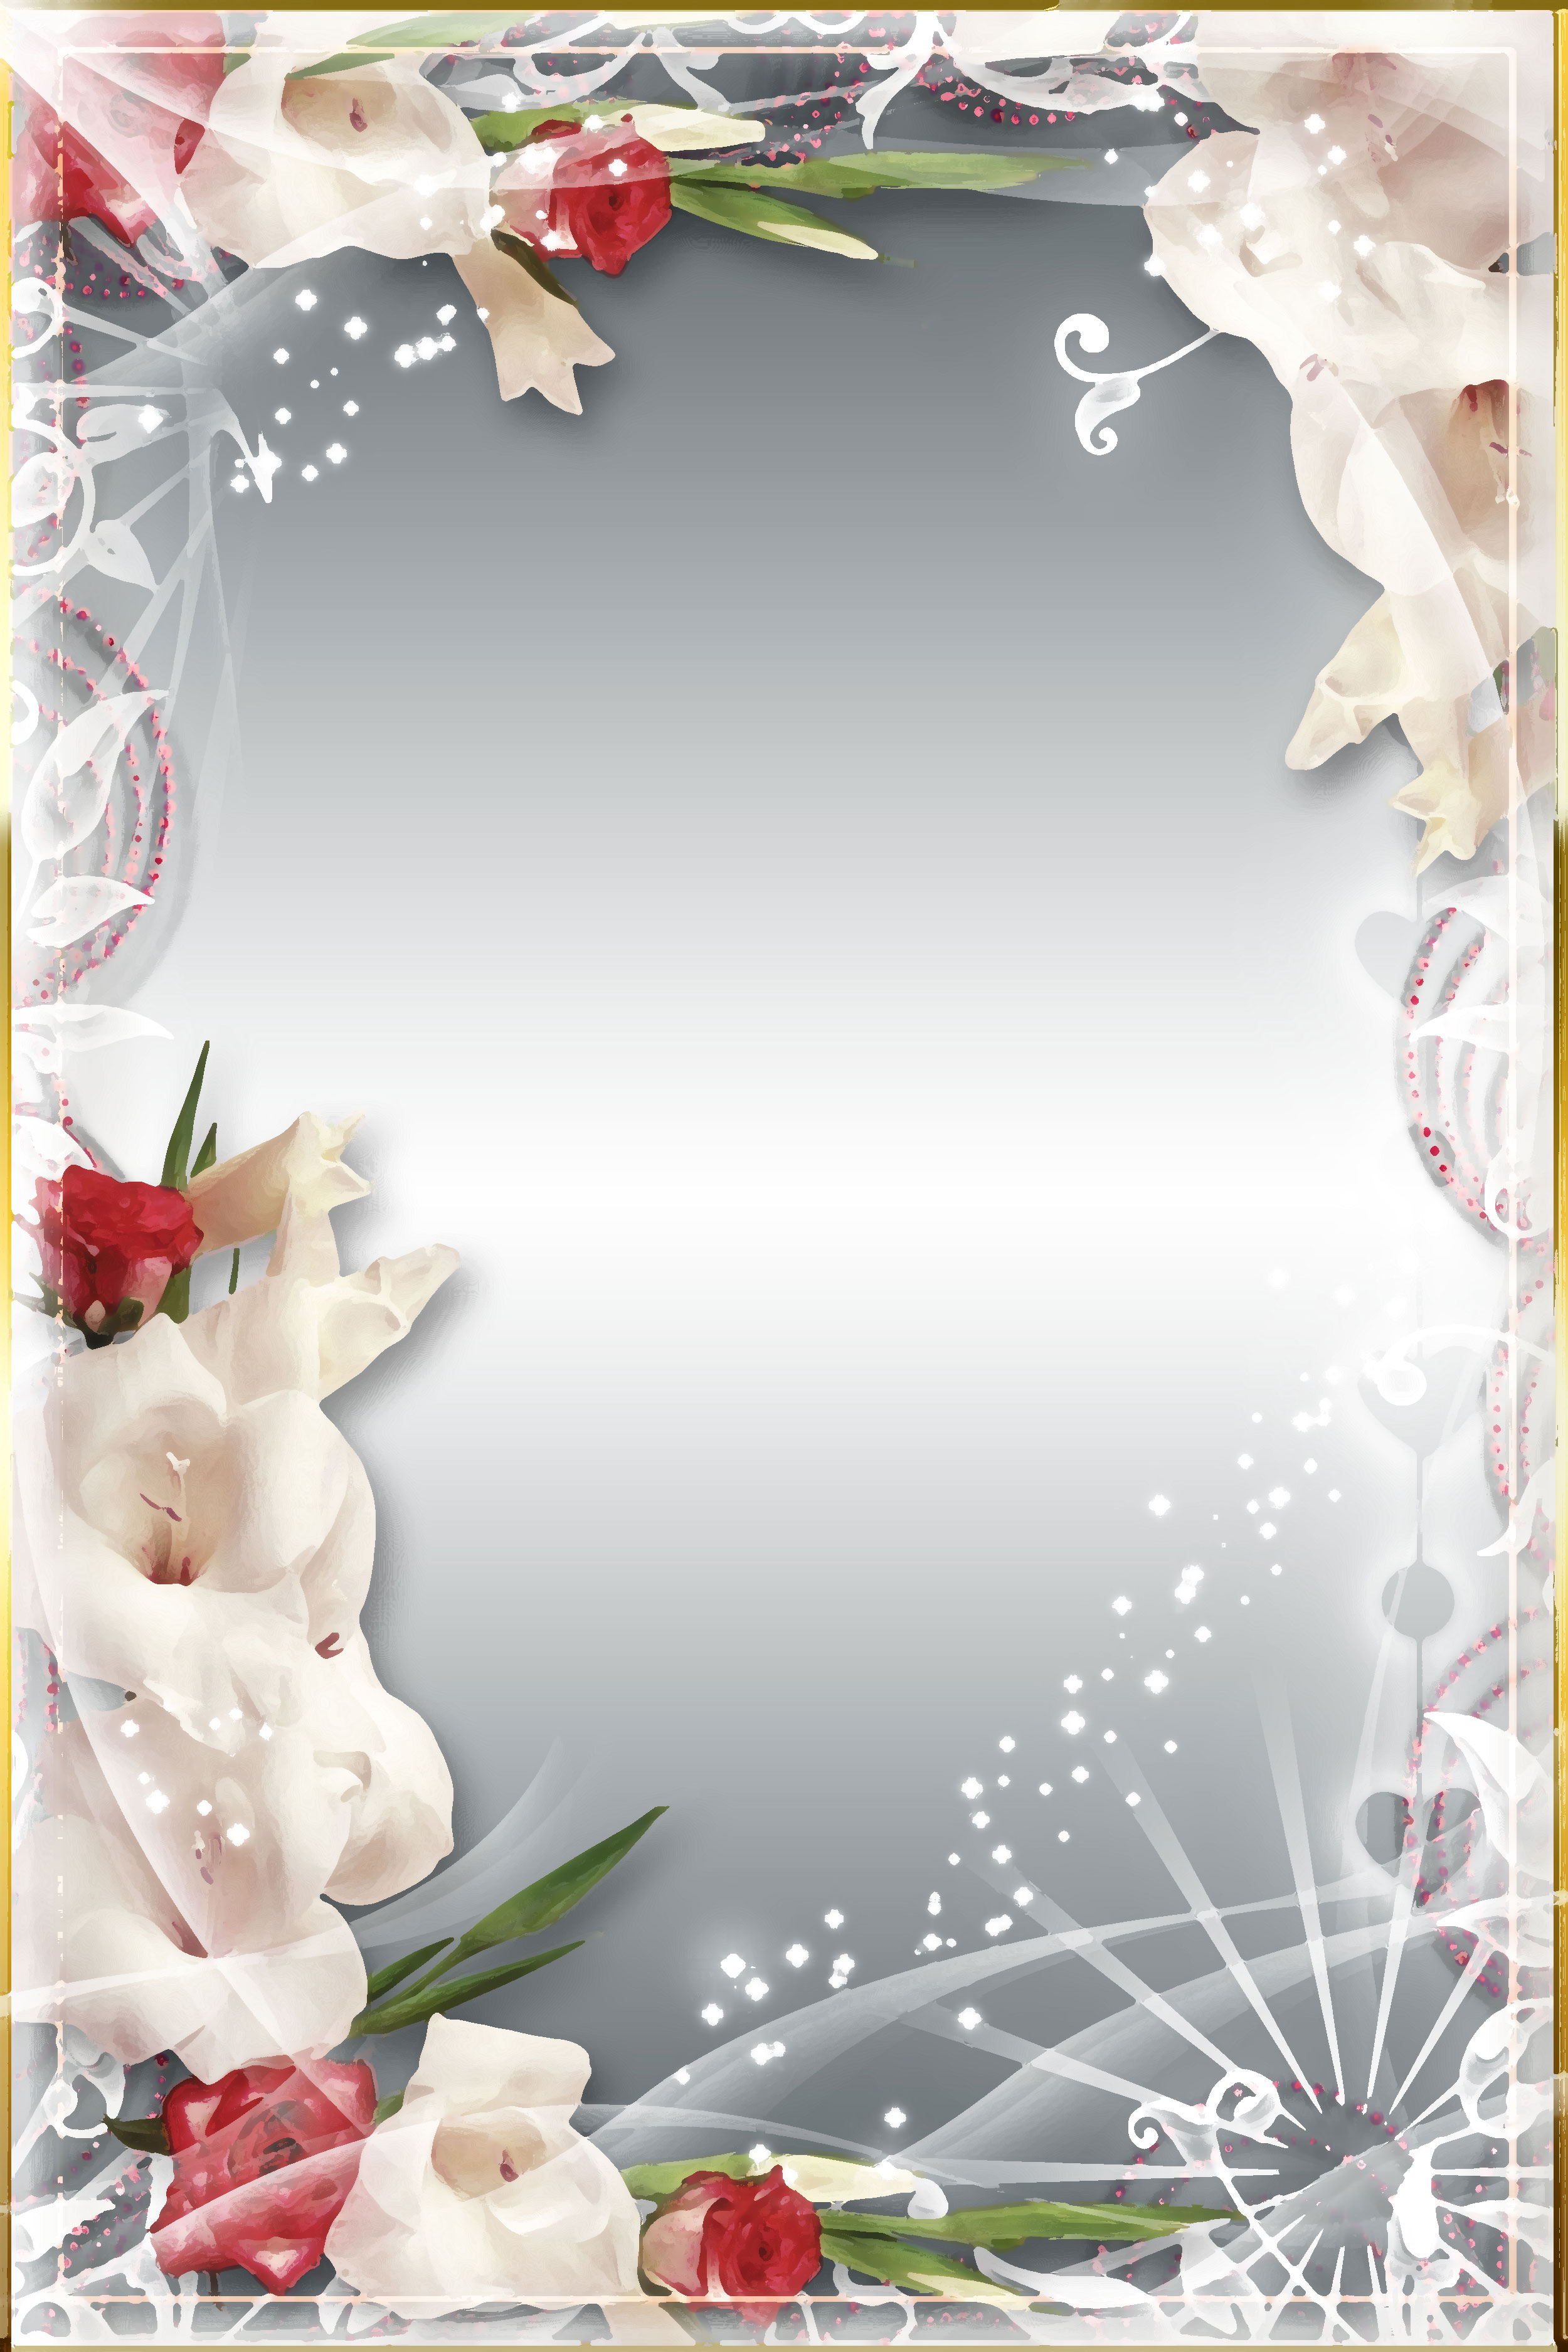 壁紙 背景イラスト 花のフレーム 外枠 No 138 赤白 バラ 光彩